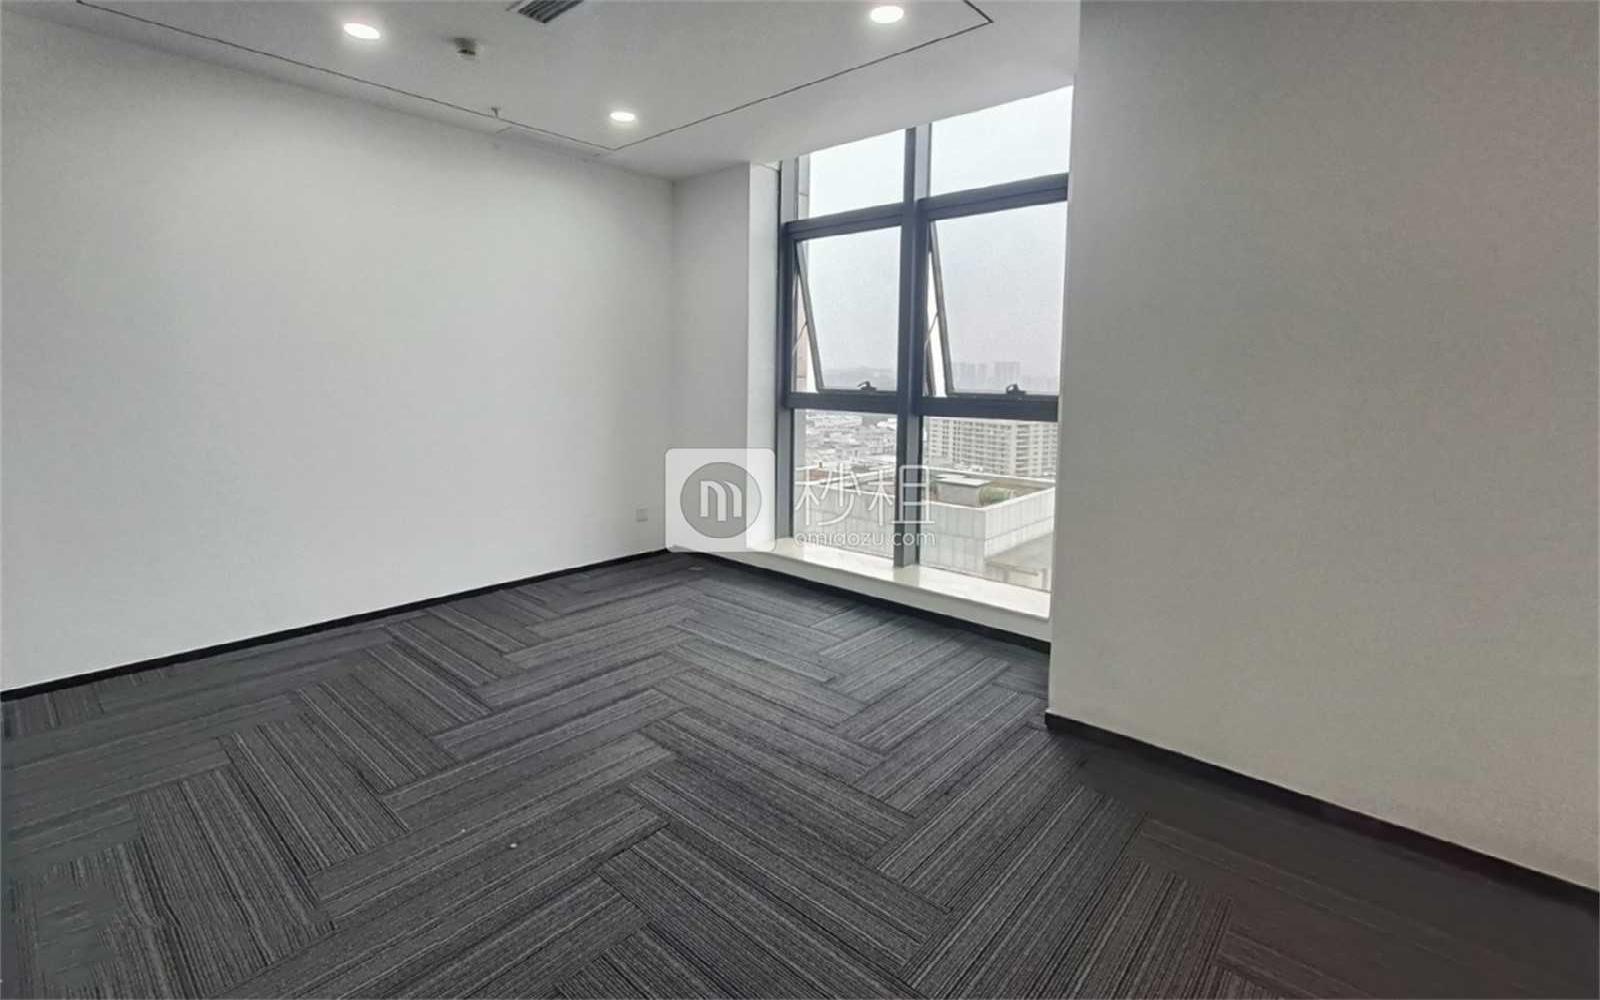 凯达尔集团中心大厦写字楼出租198平米精装办公室95元/m².月